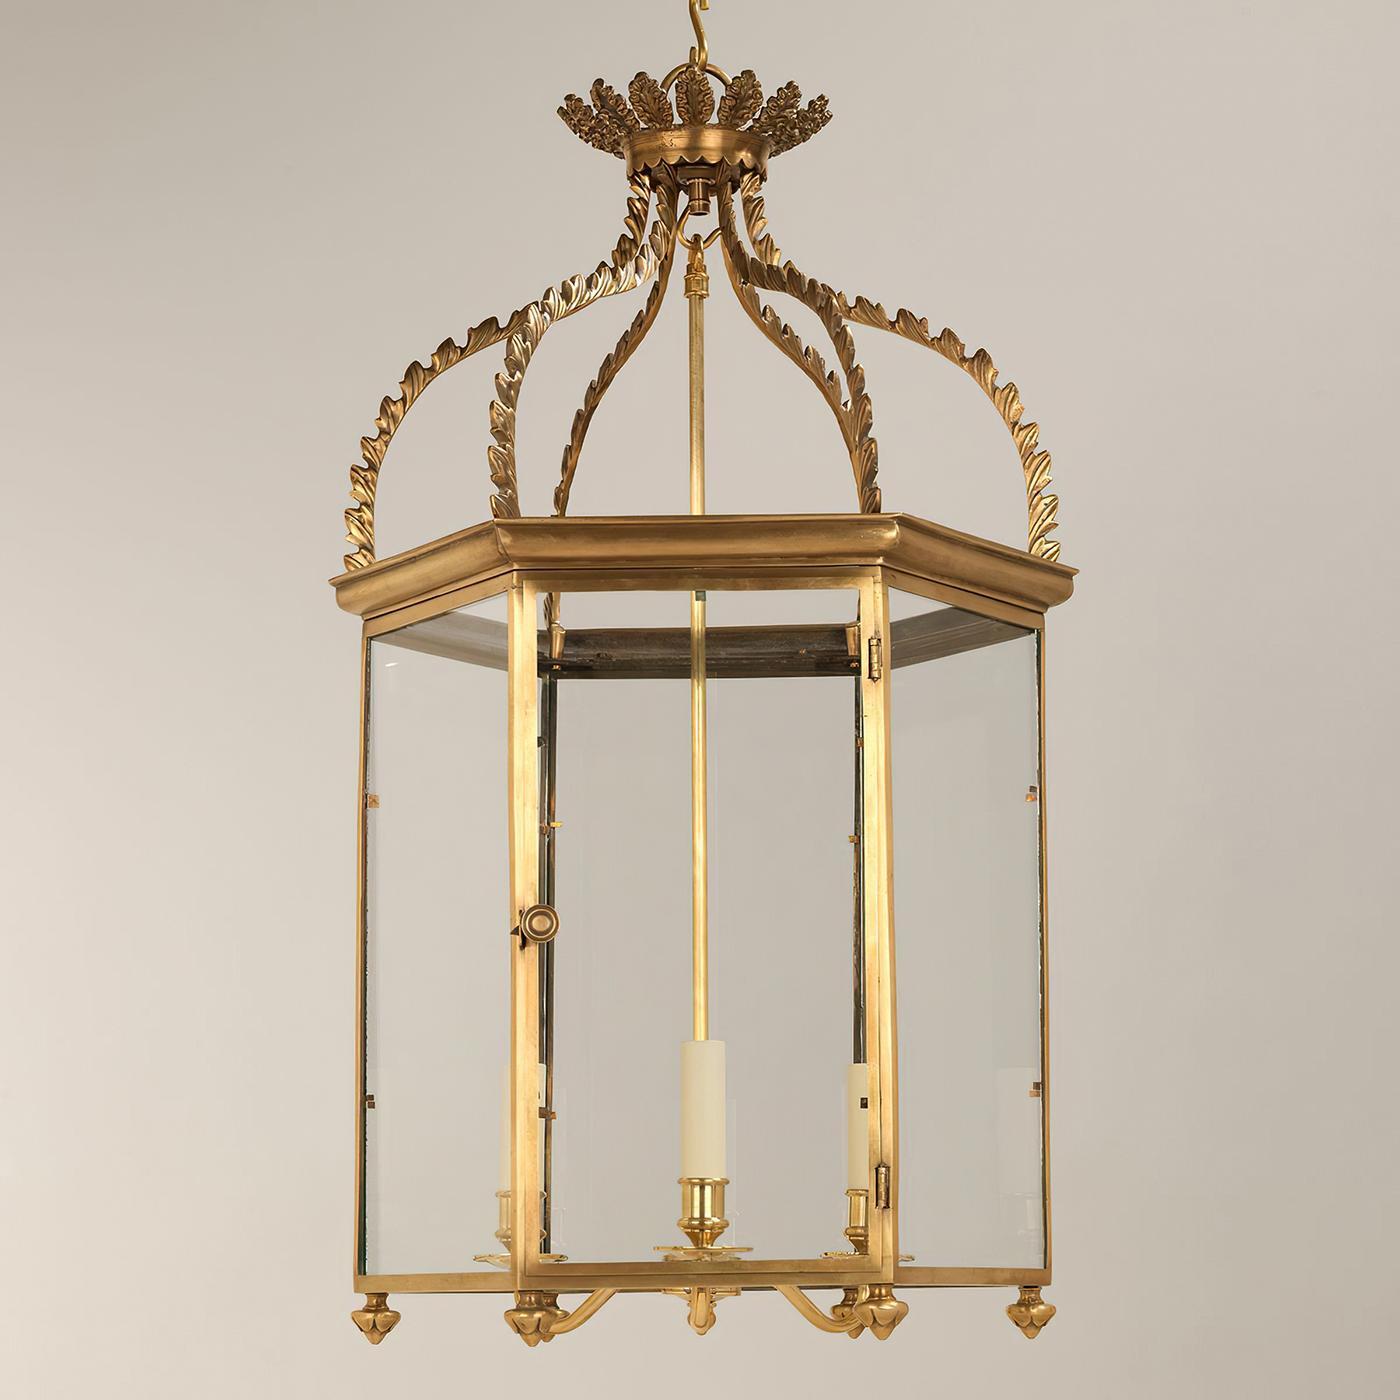 Lanterne d'entrée Régence. Cette lanterne classique est basée sur un original à six faces du XIXe siècle. Superbement moulé, il illustre toute une gamme de techniques, depuis le cadre finement ouvragé jusqu'à la section supérieure ornementale, dotée